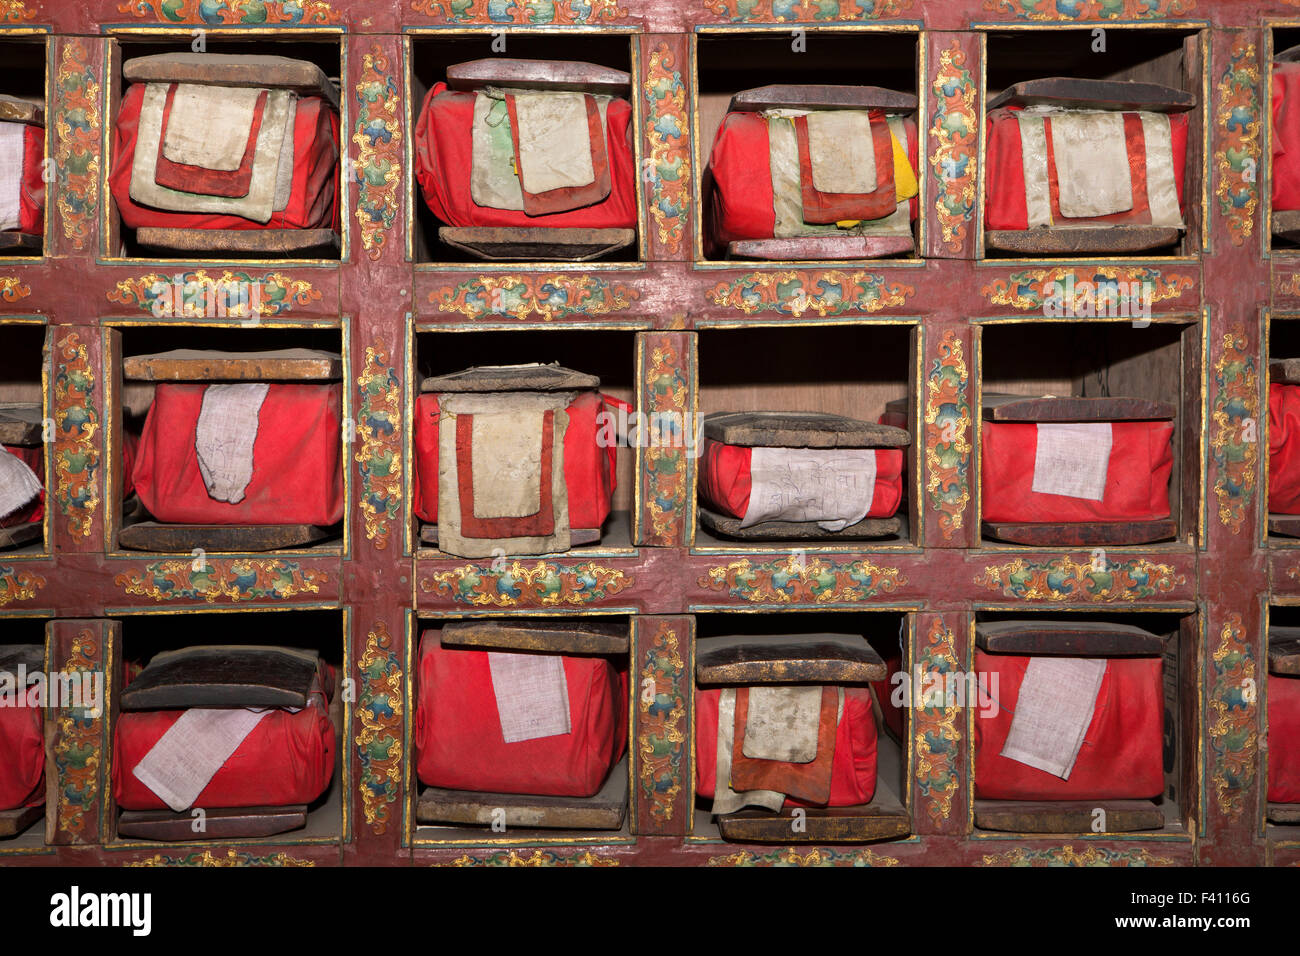 Indien, Jammu & Kashmir, Ladakh, Leh Palace Royal, Schrein, buddhistische religiöse Texte in Tuch gewickelt Stockfoto